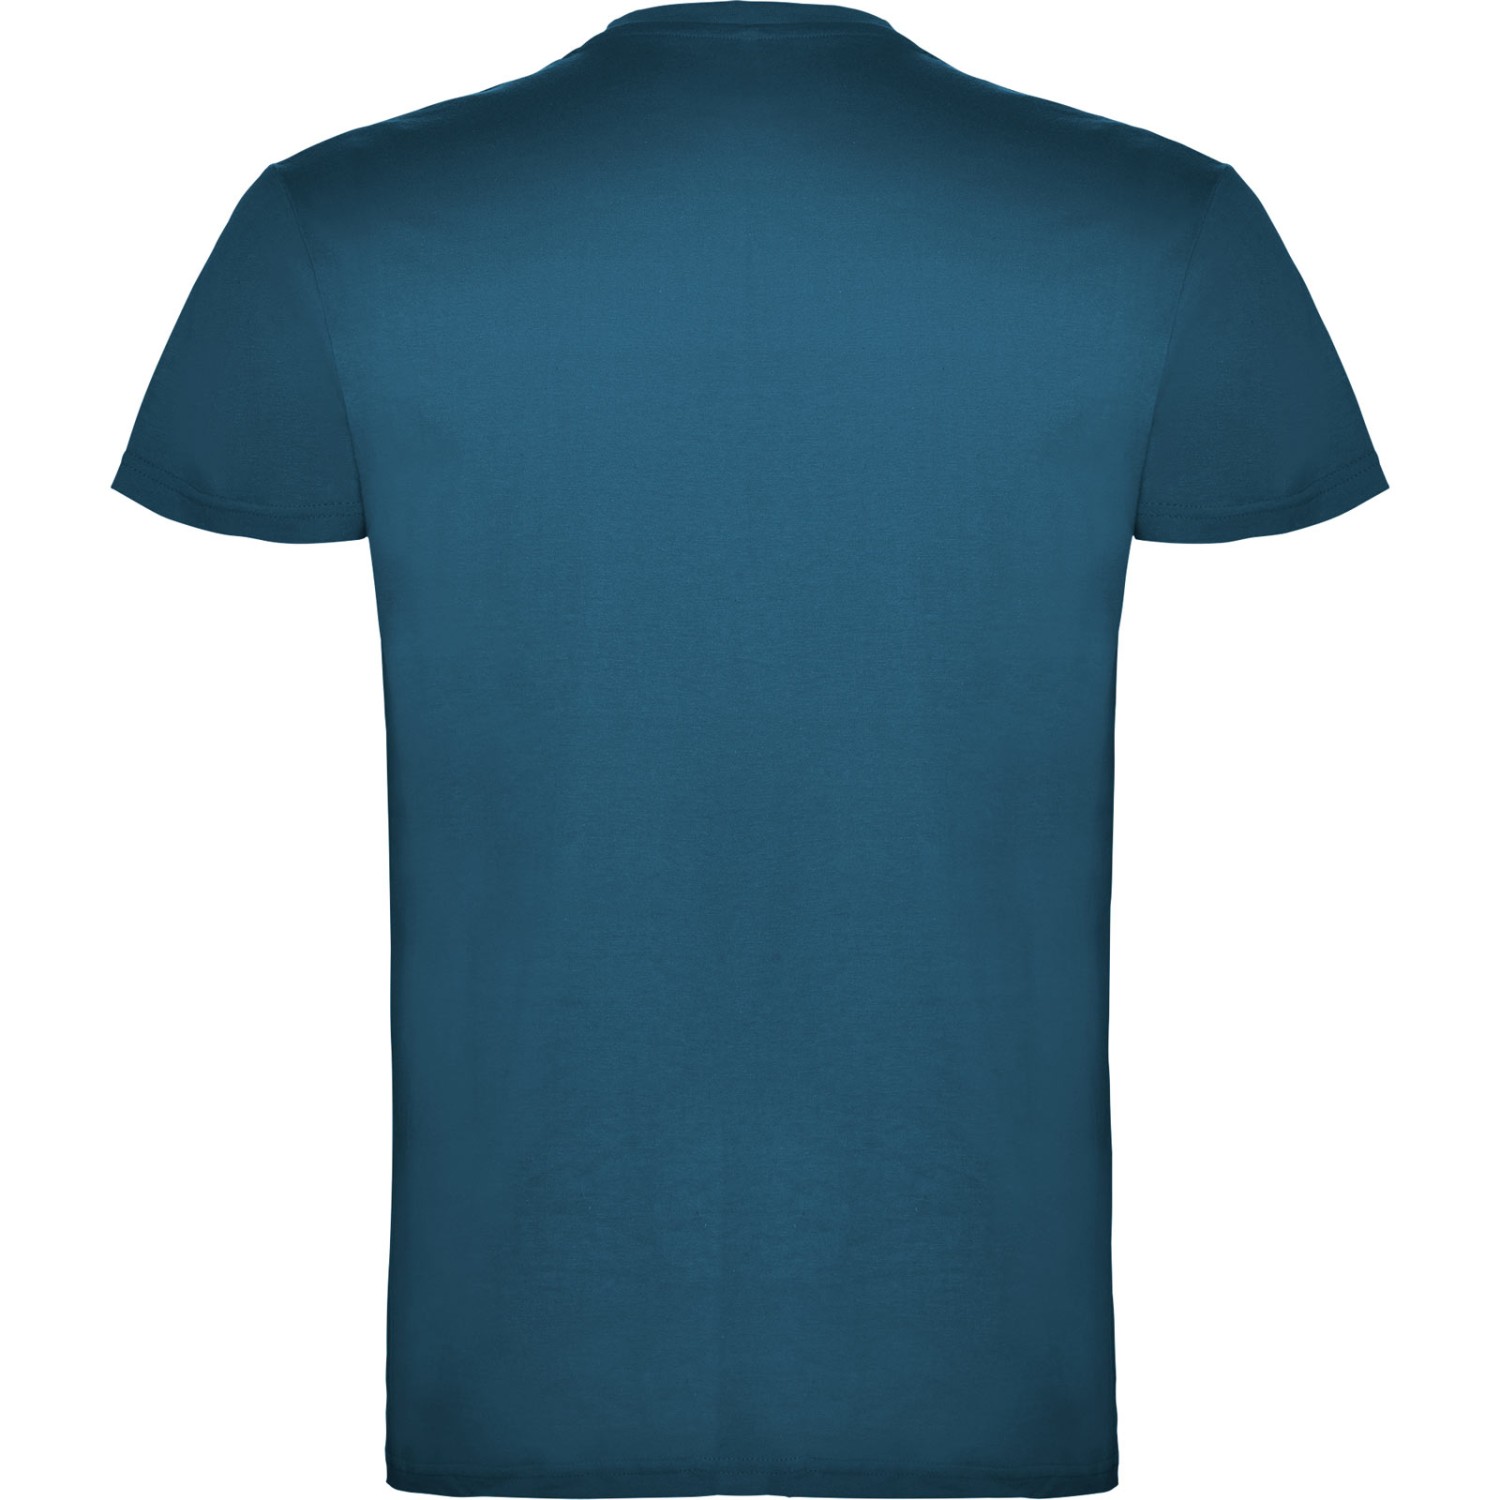 3. Foto T-Shirt BEAGLE Kurzarm Rundhals mit Druck (Farbe: moonlight blau Größe: M)